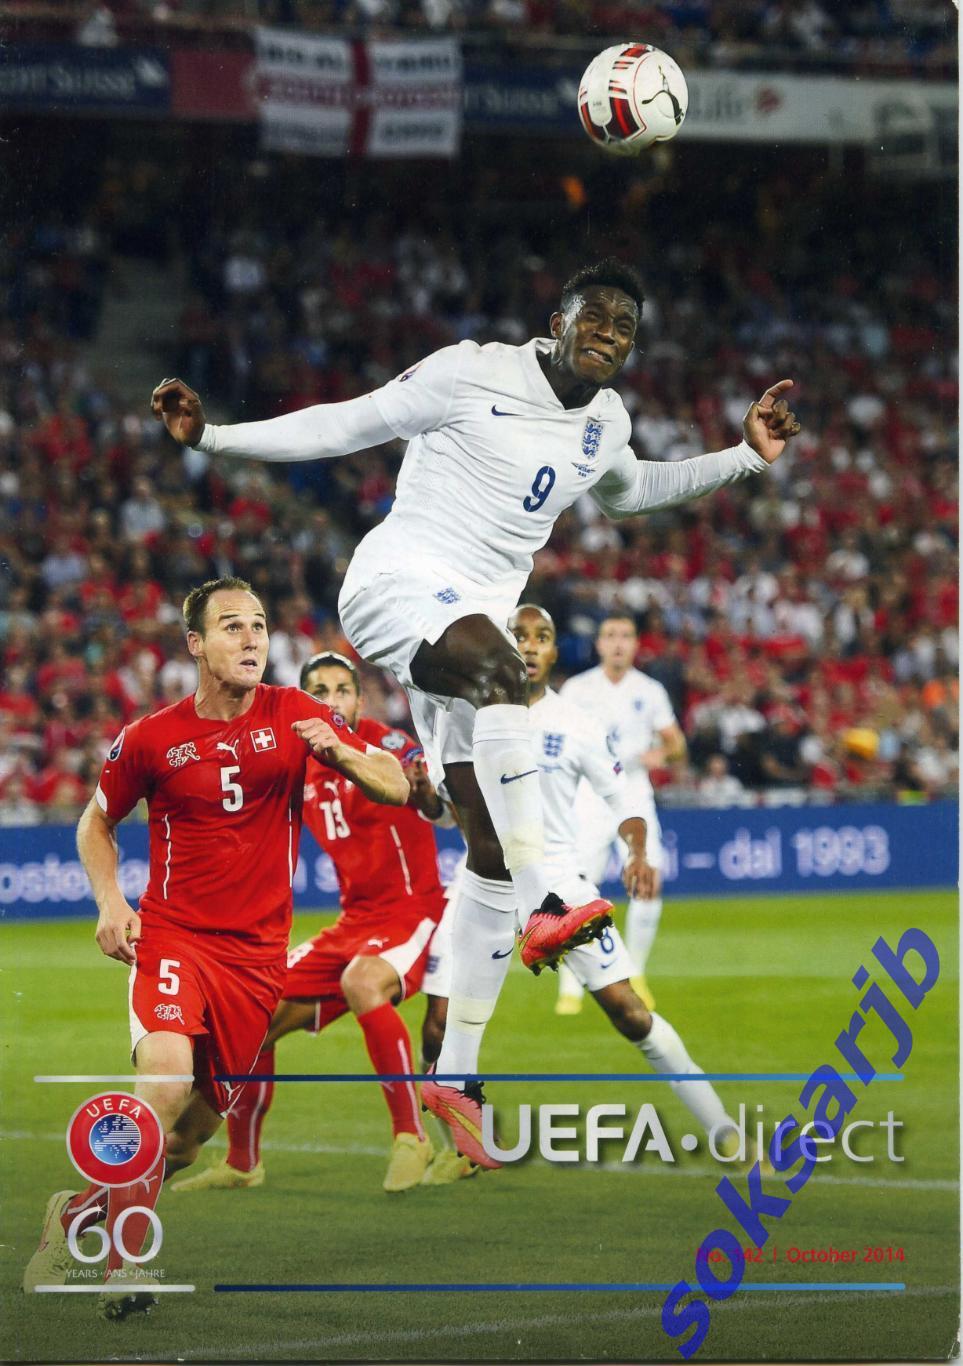 2014. октябрь. Журнал UEFA direct. Официальный журнал UEFA. Большой формат А4.